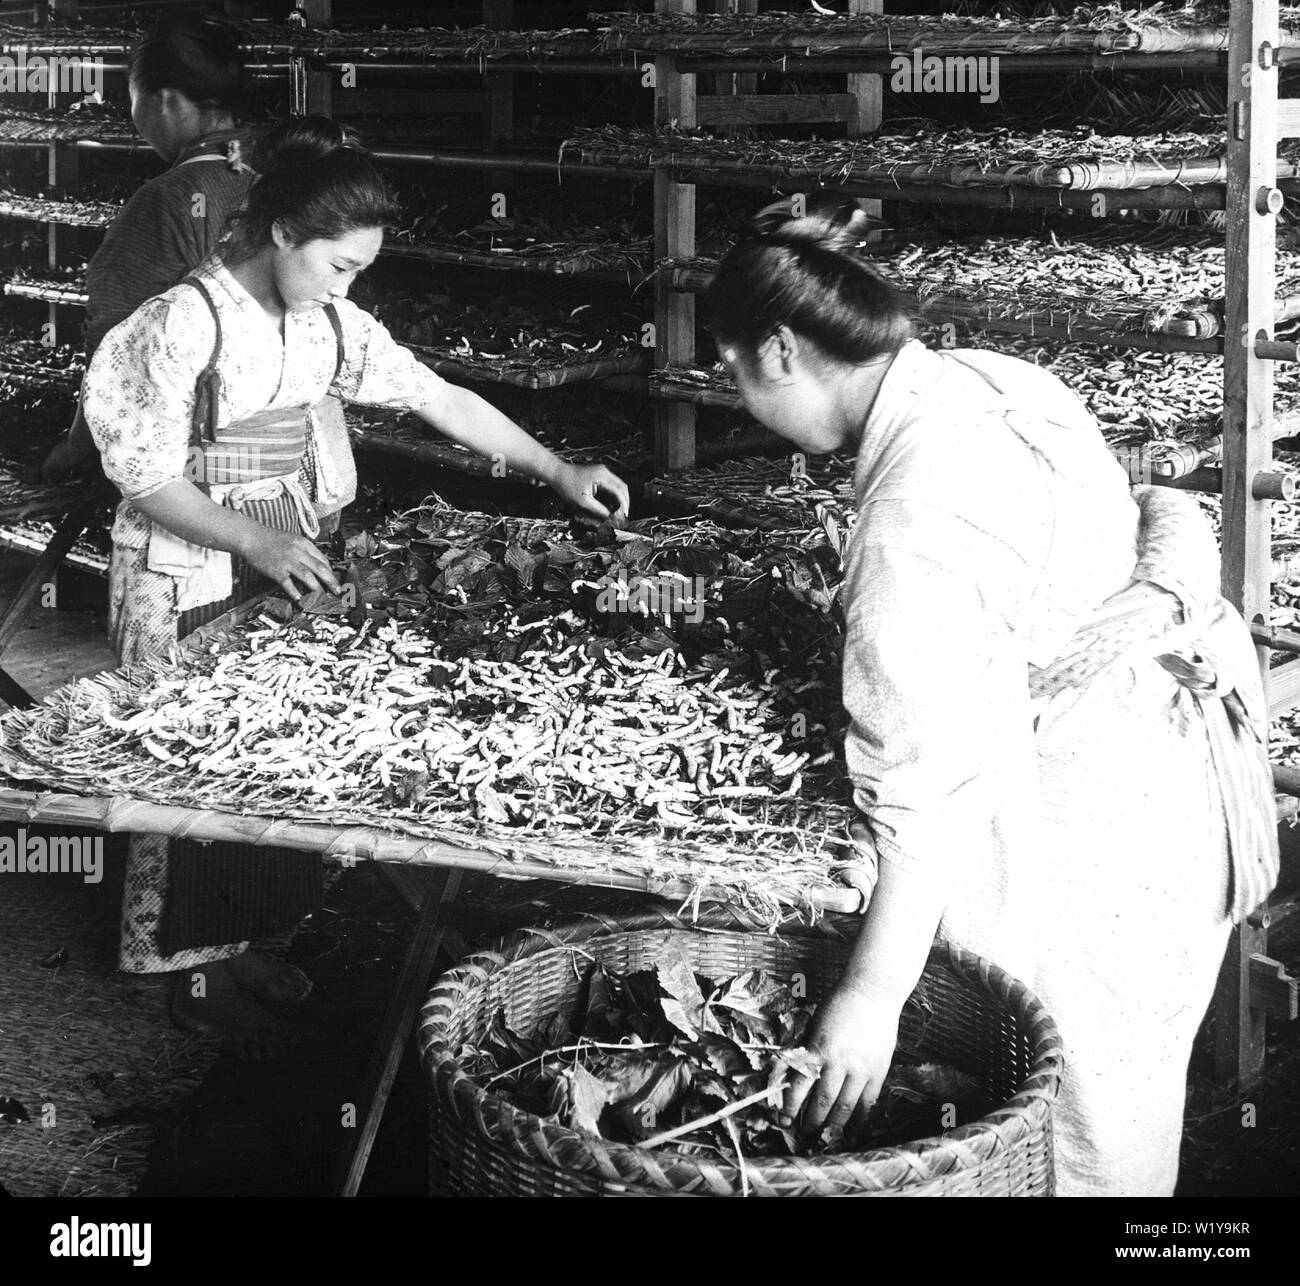 [ 1900 Giappone - Le donne giapponesi alimentazione di bachi da seta ] - Due donne feed bachi da seta con foglie di gelso. Questo vetrino pubblicato dalla Keystone View Company è stata fotografata da Julian Cochrane nel 1904. Xx secolo vintage vetrino di vetro. Foto Stock